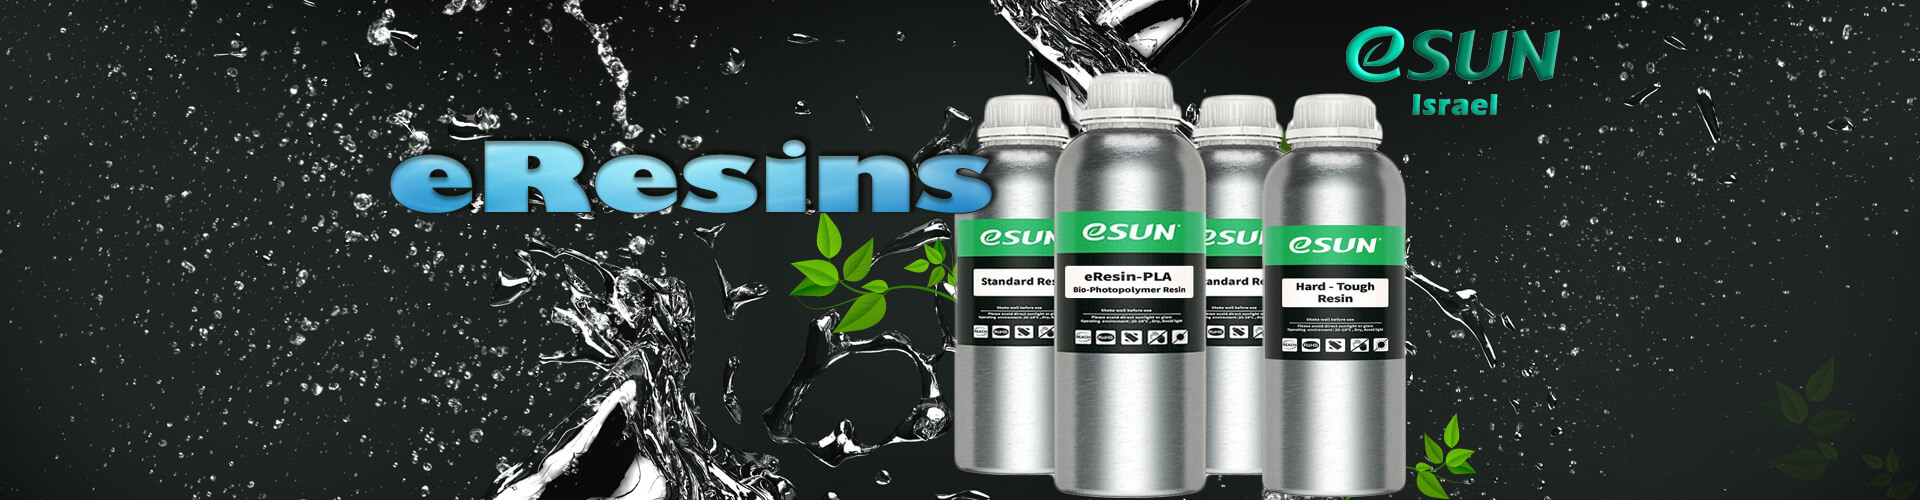 esun-israel-eresin-bio-for-lcd-and-sla-3d-printers